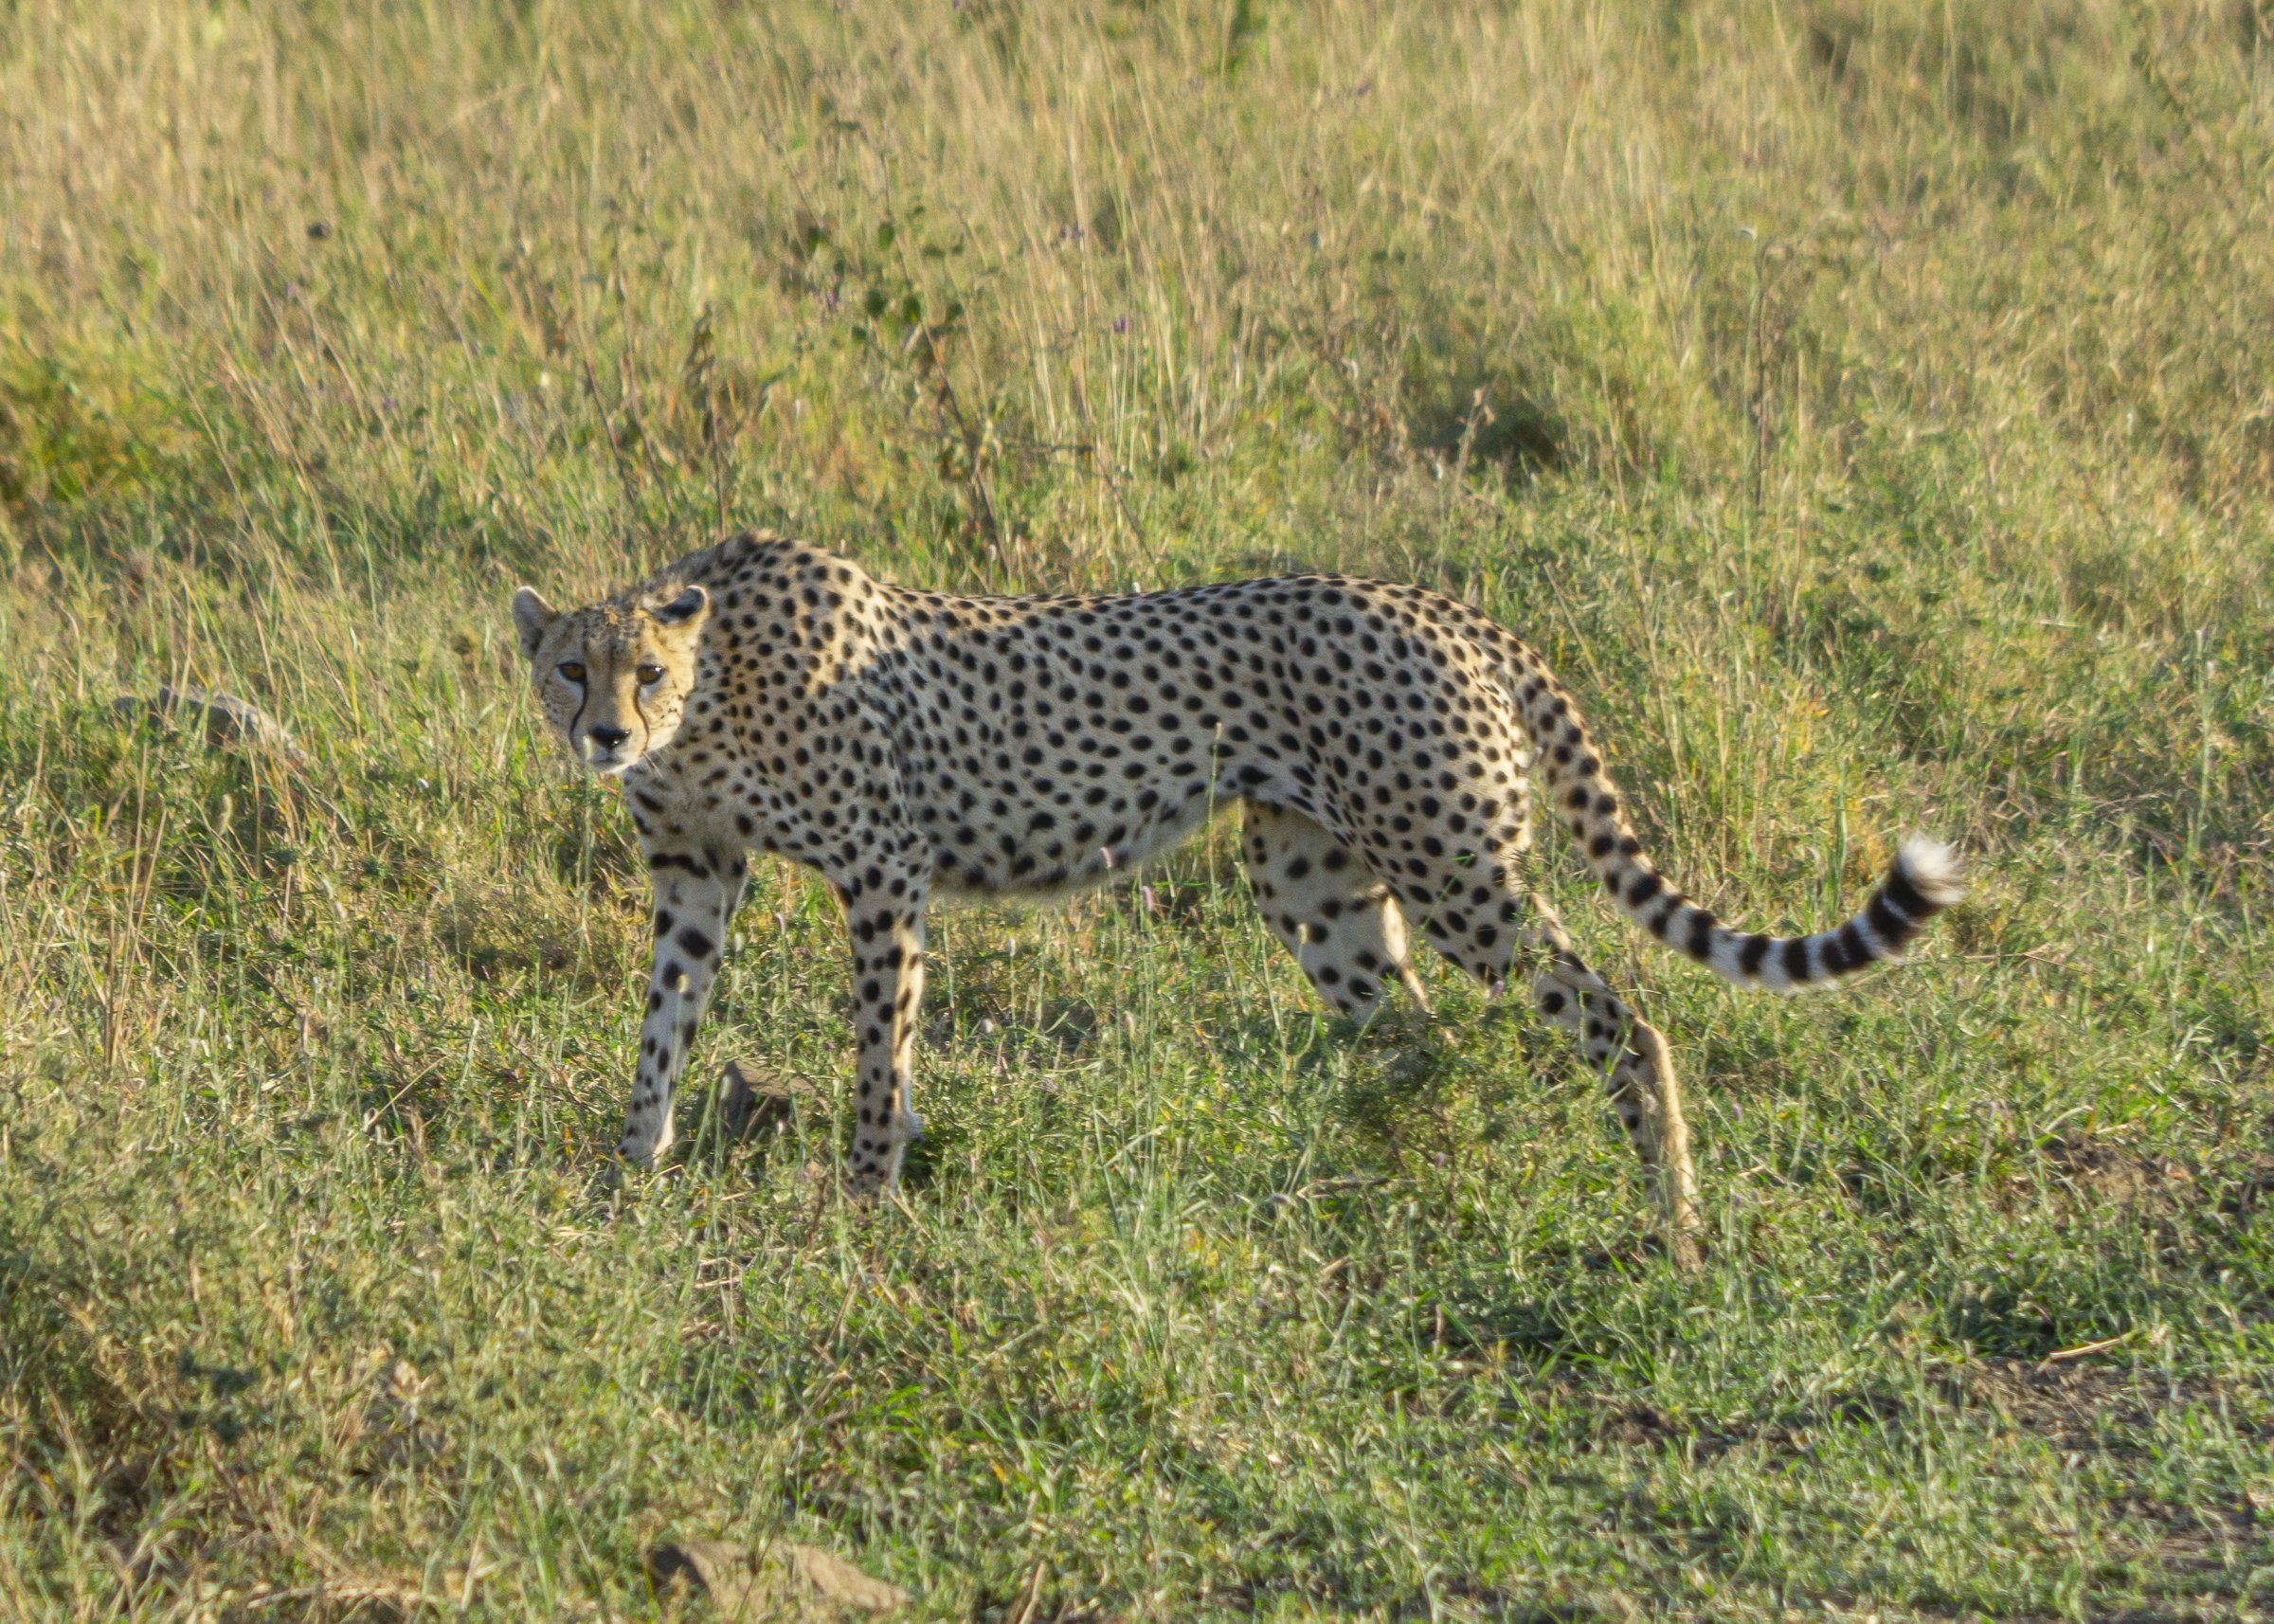 Cheetah stare